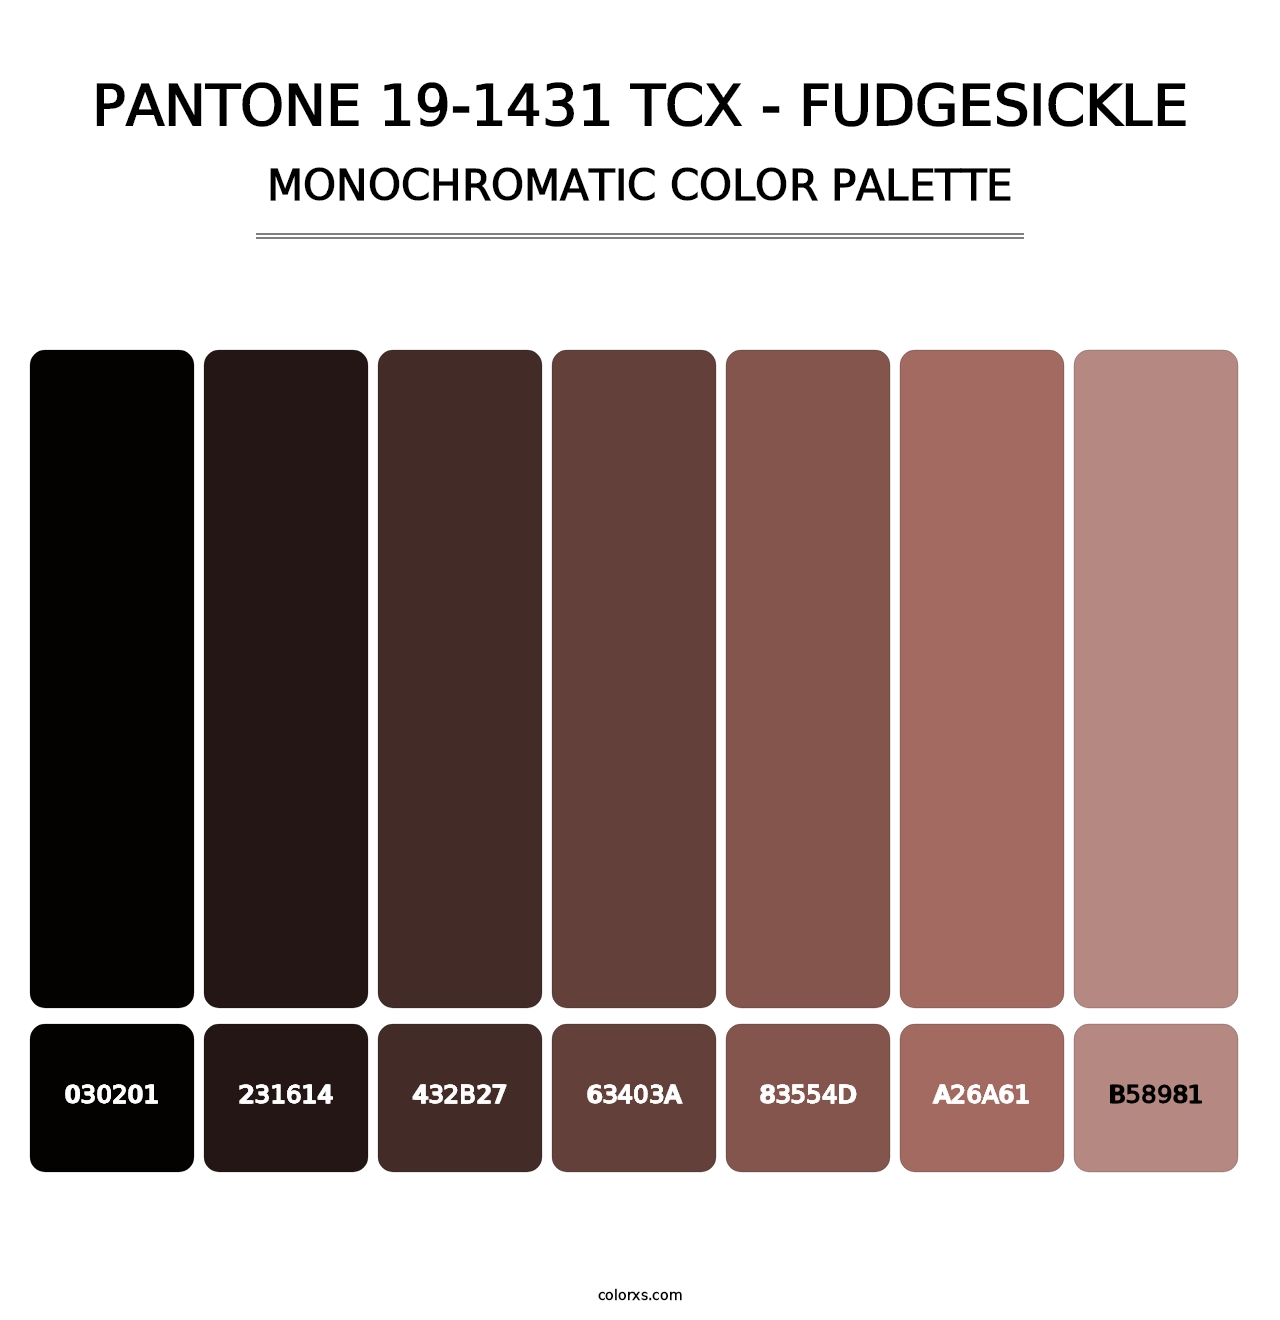 PANTONE 19-1431 TCX - Fudgesickle - Monochromatic Color Palette